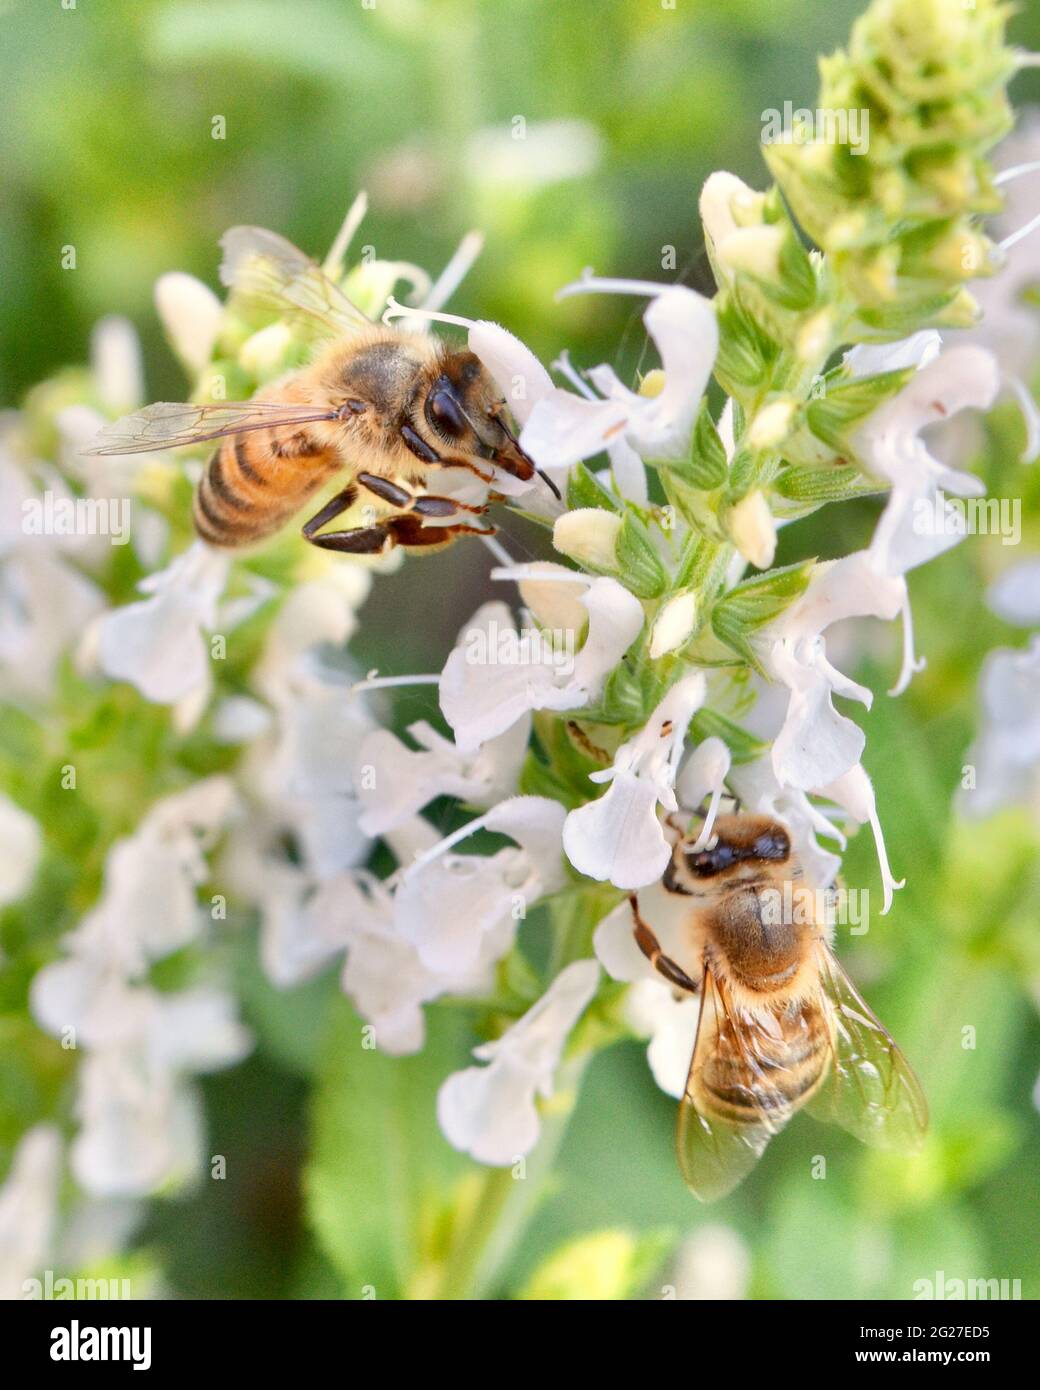 Deux abeilles domestiques (APIs mellifera) se nourrissent de nectar et de pollen sur les délicates fleurs blanches de la salvia. Gros plan. Copier l'espace. Banque D'Images